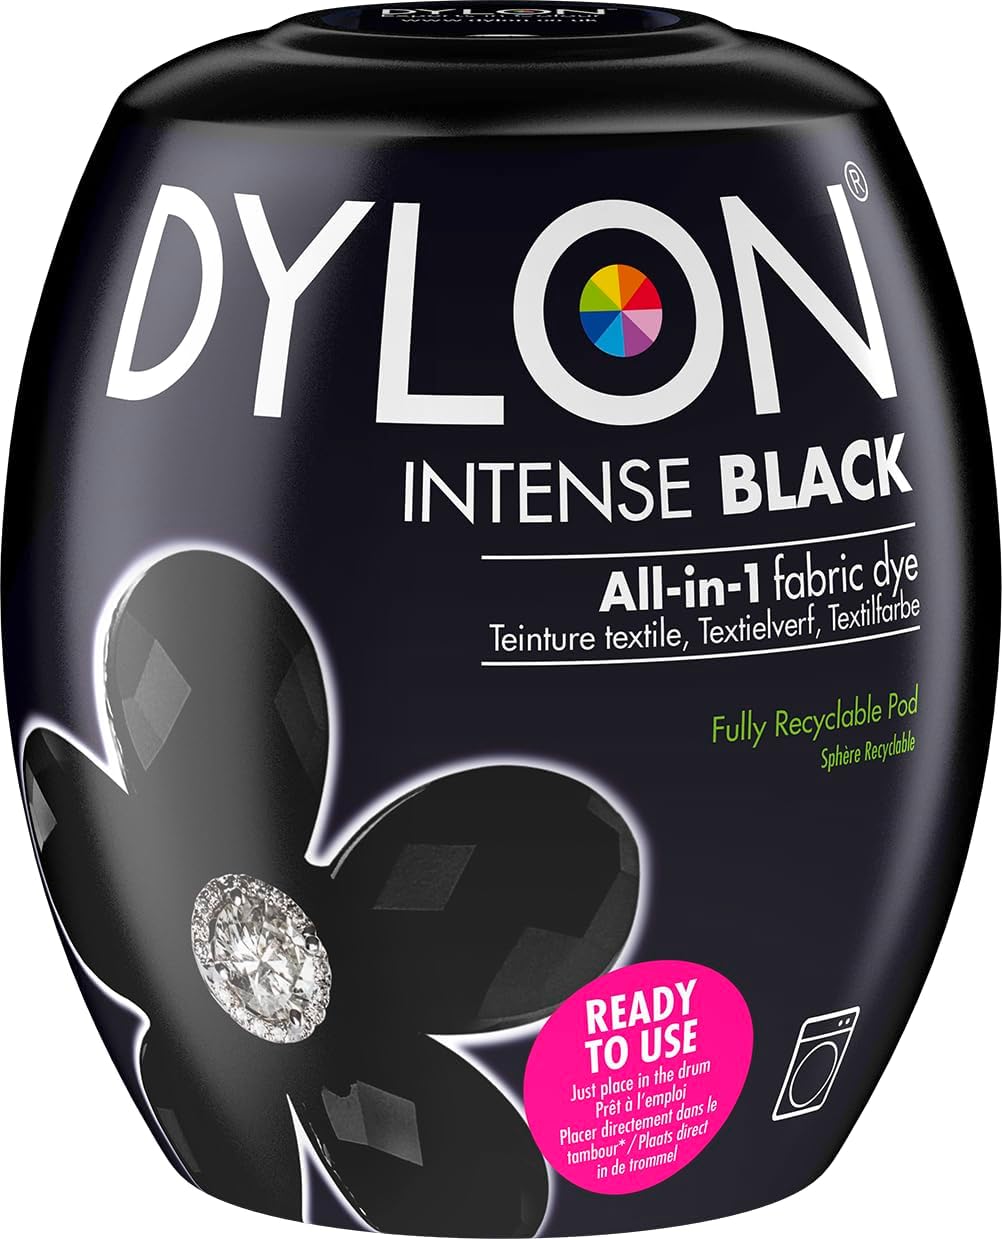 Dylon Fabric Dye Intense Black